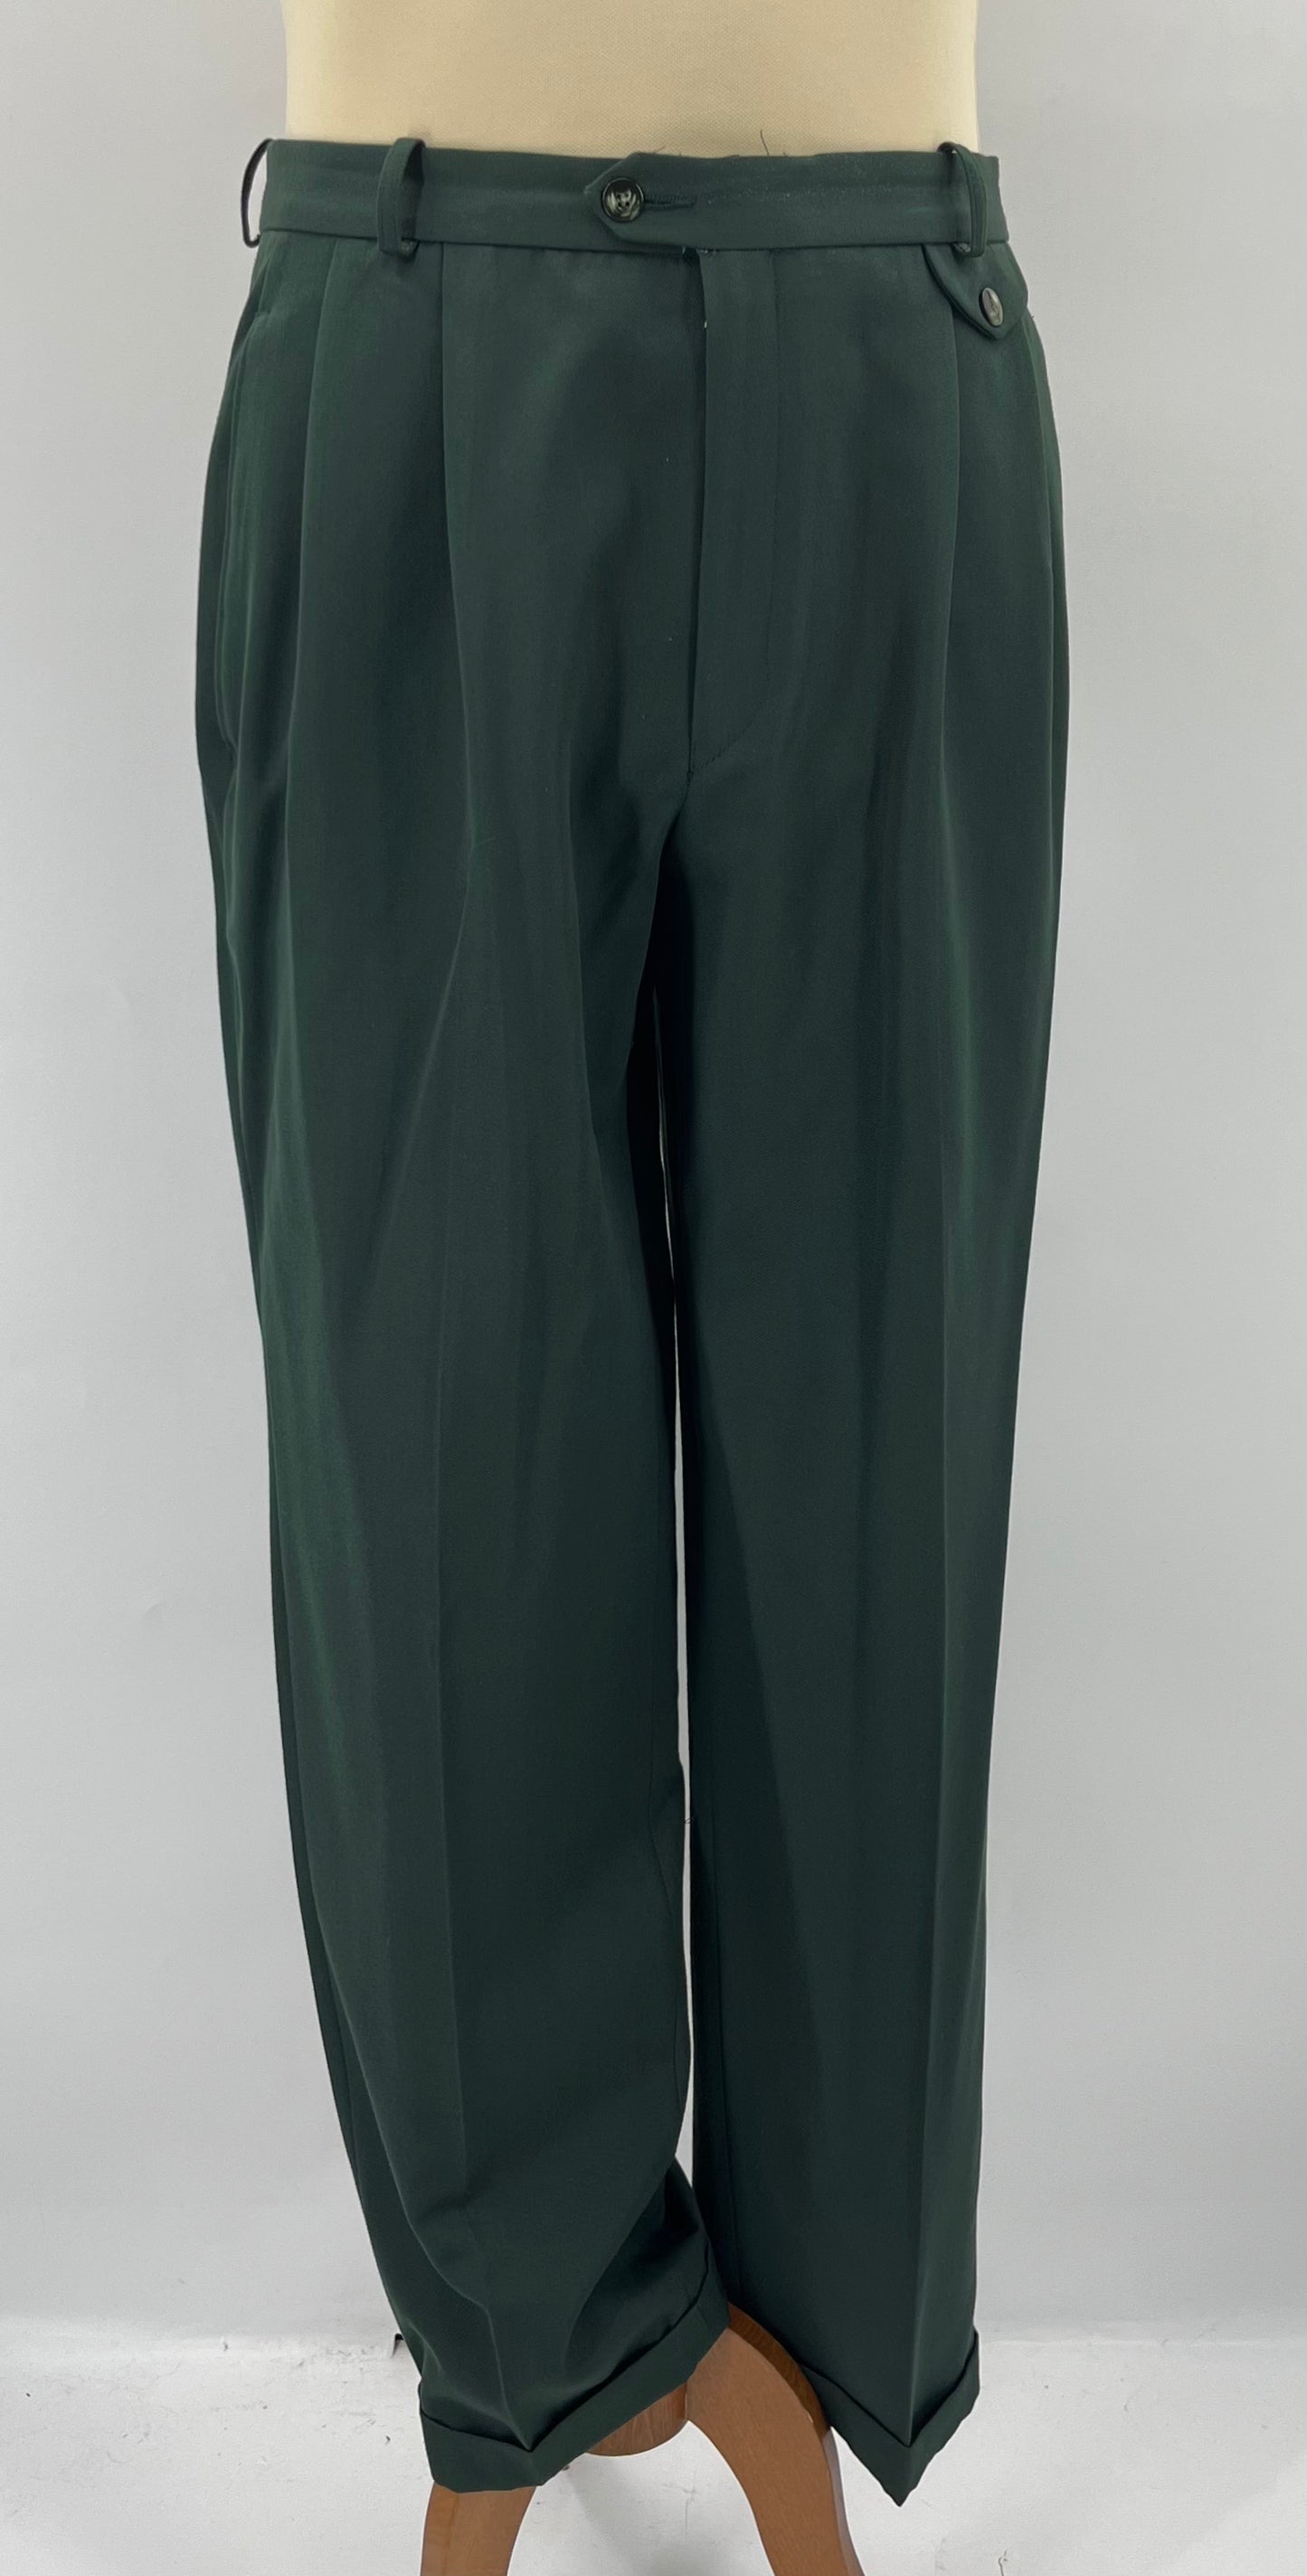 Tuomi, vihreät miesten housut, 80-90-luku, vyöt.ymp. 88cm